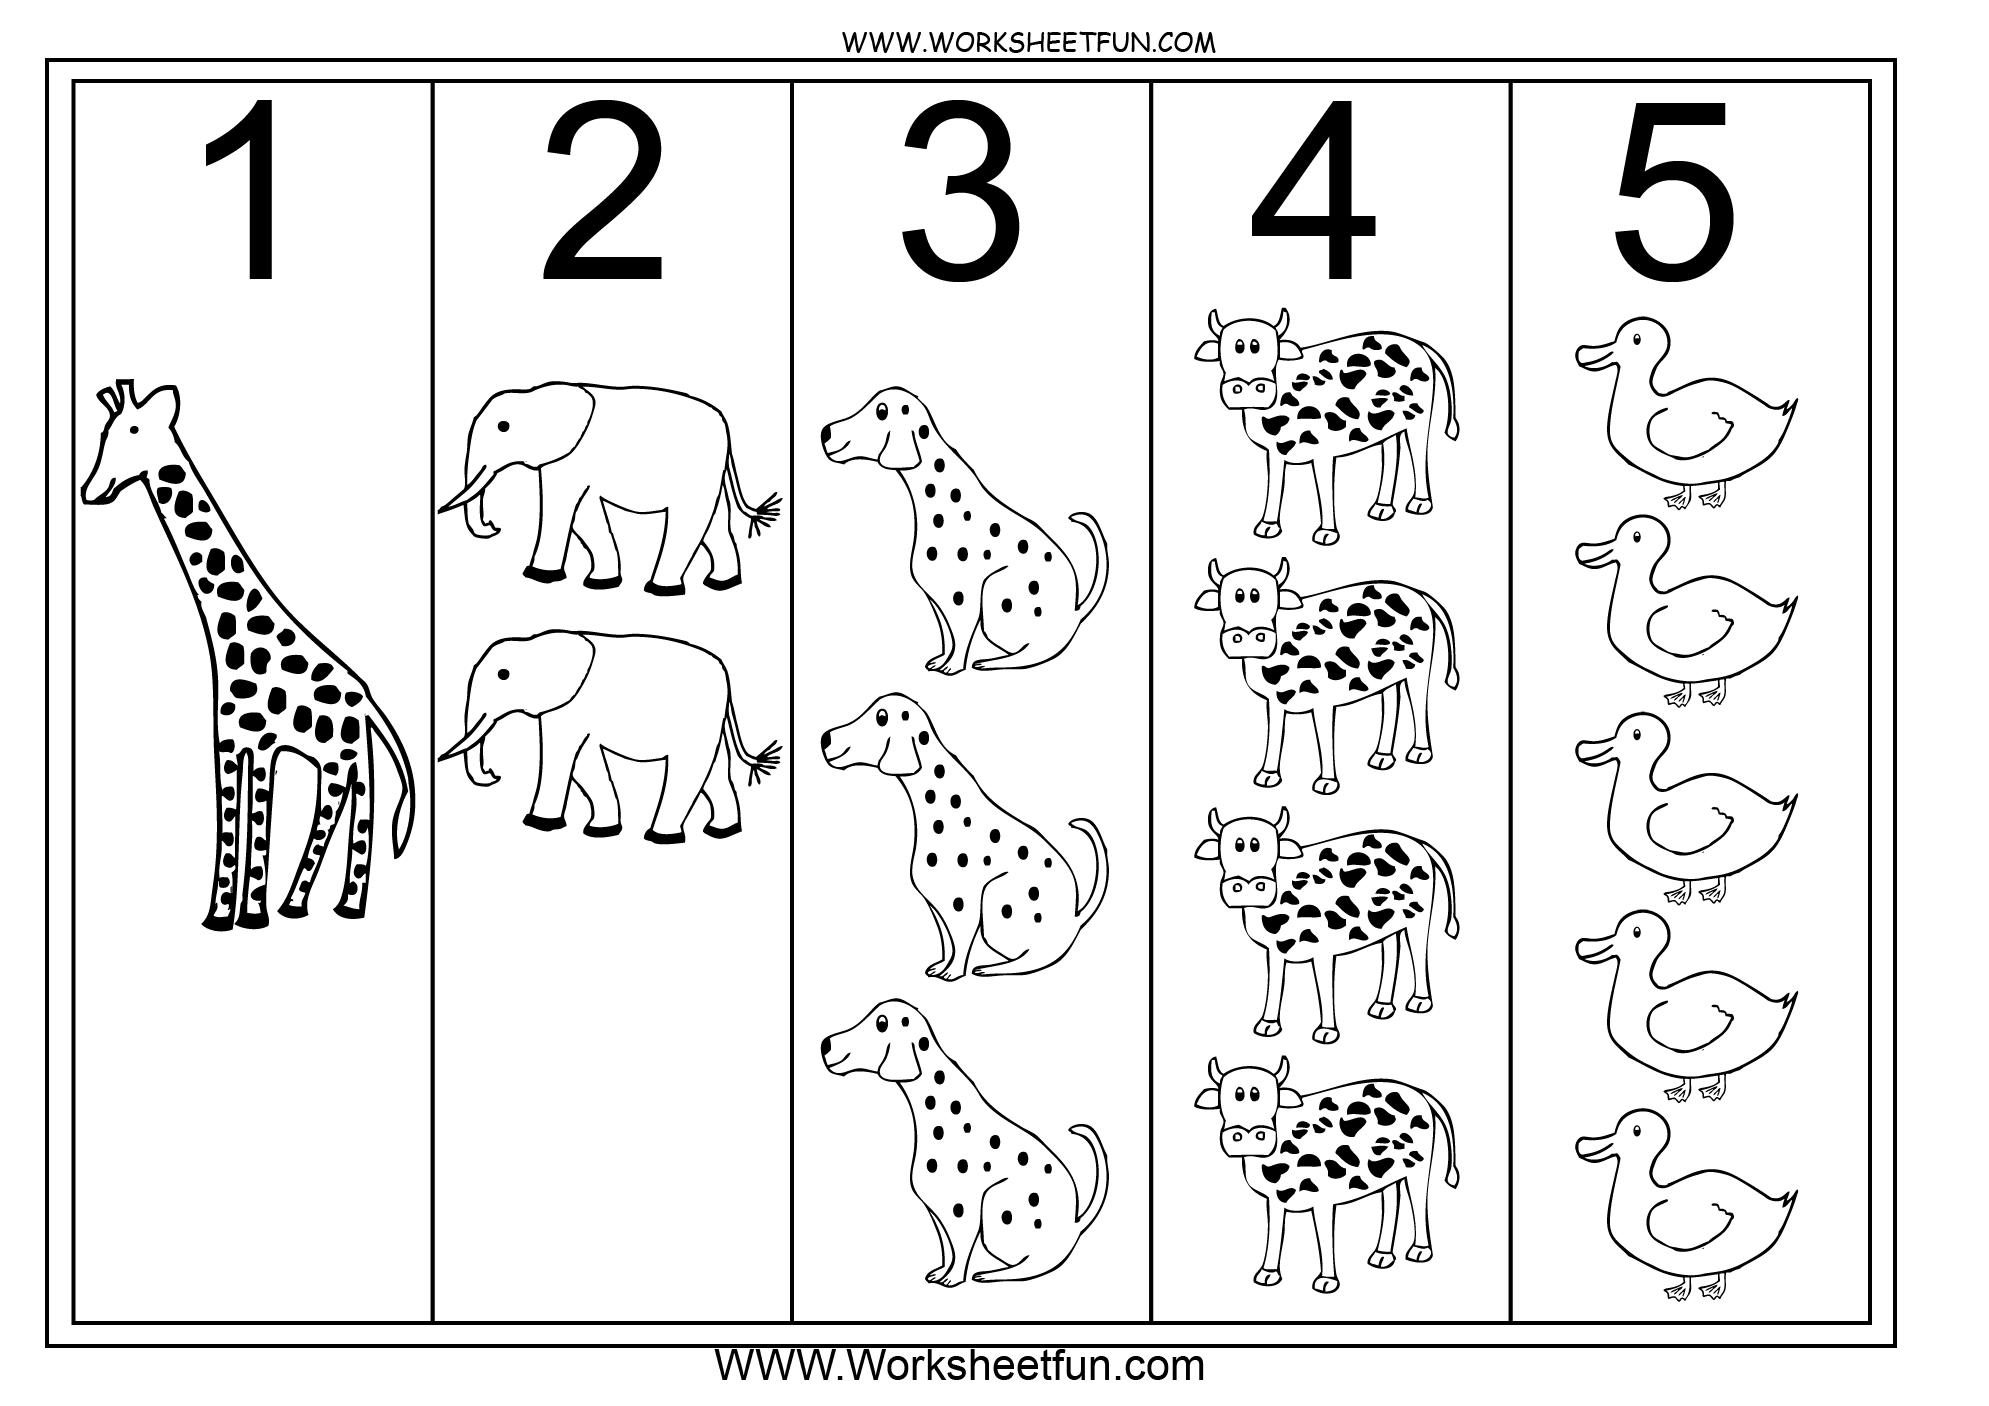 15 Best Images Of Numbers 1 Through 5 Worksheet Preschool Worksheets Numbers 1 5 Kindergarten 